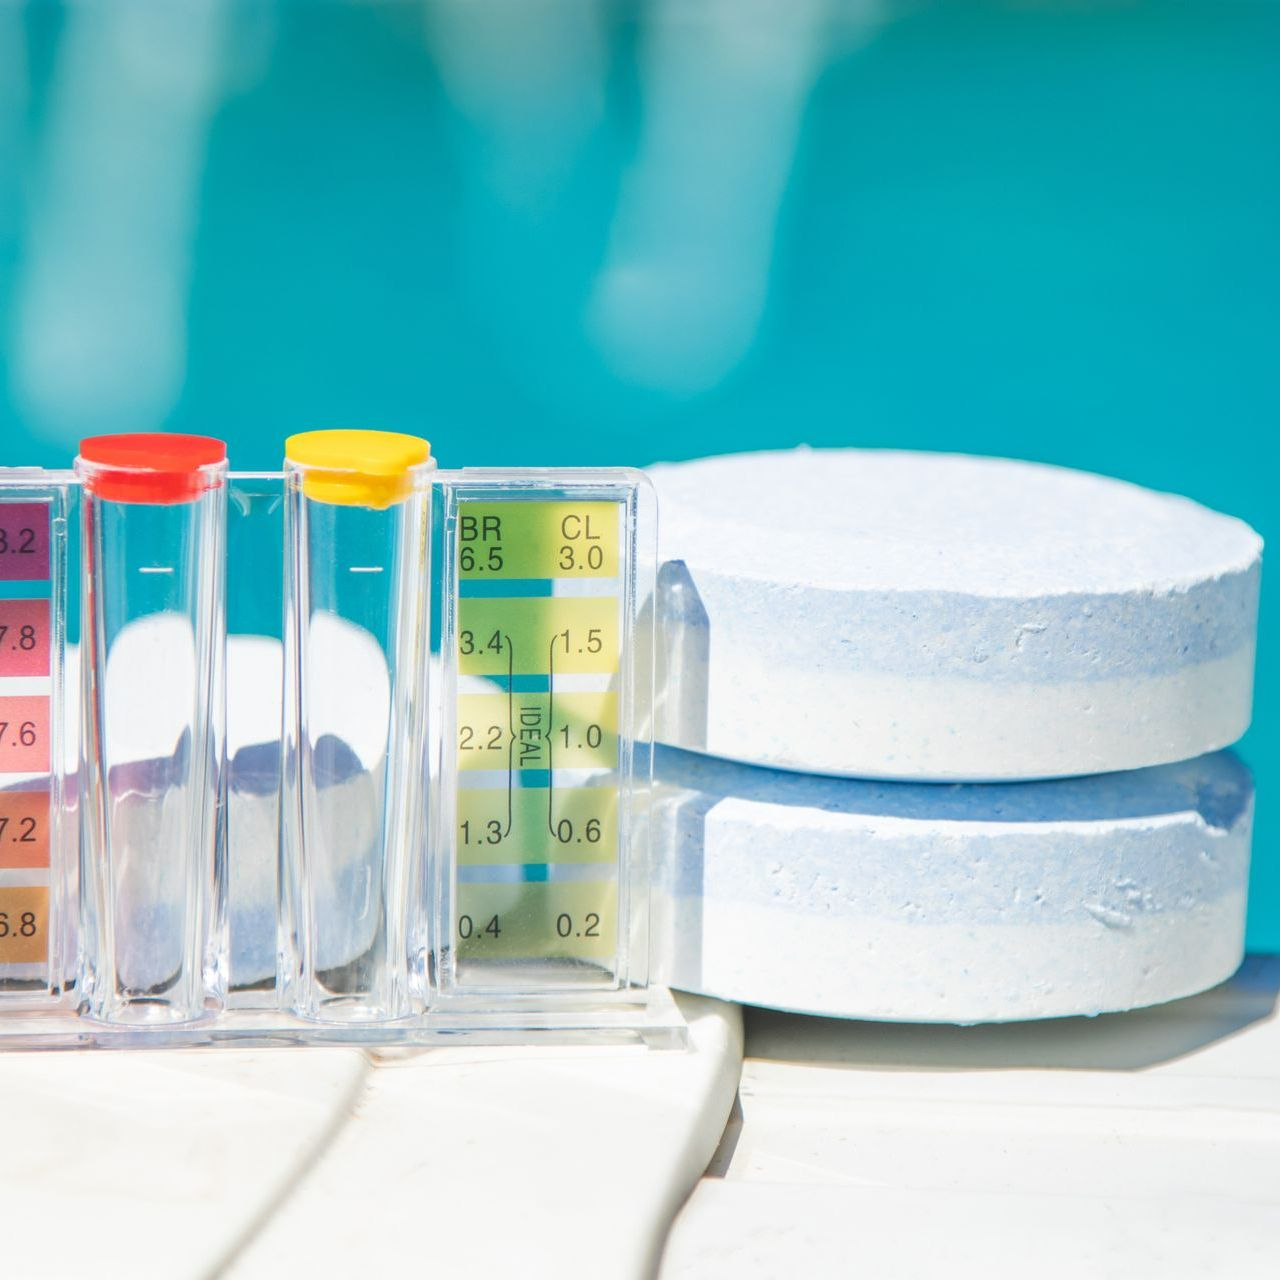 Galets de chlore et testeur de pH posés sur le bord d'une piscine